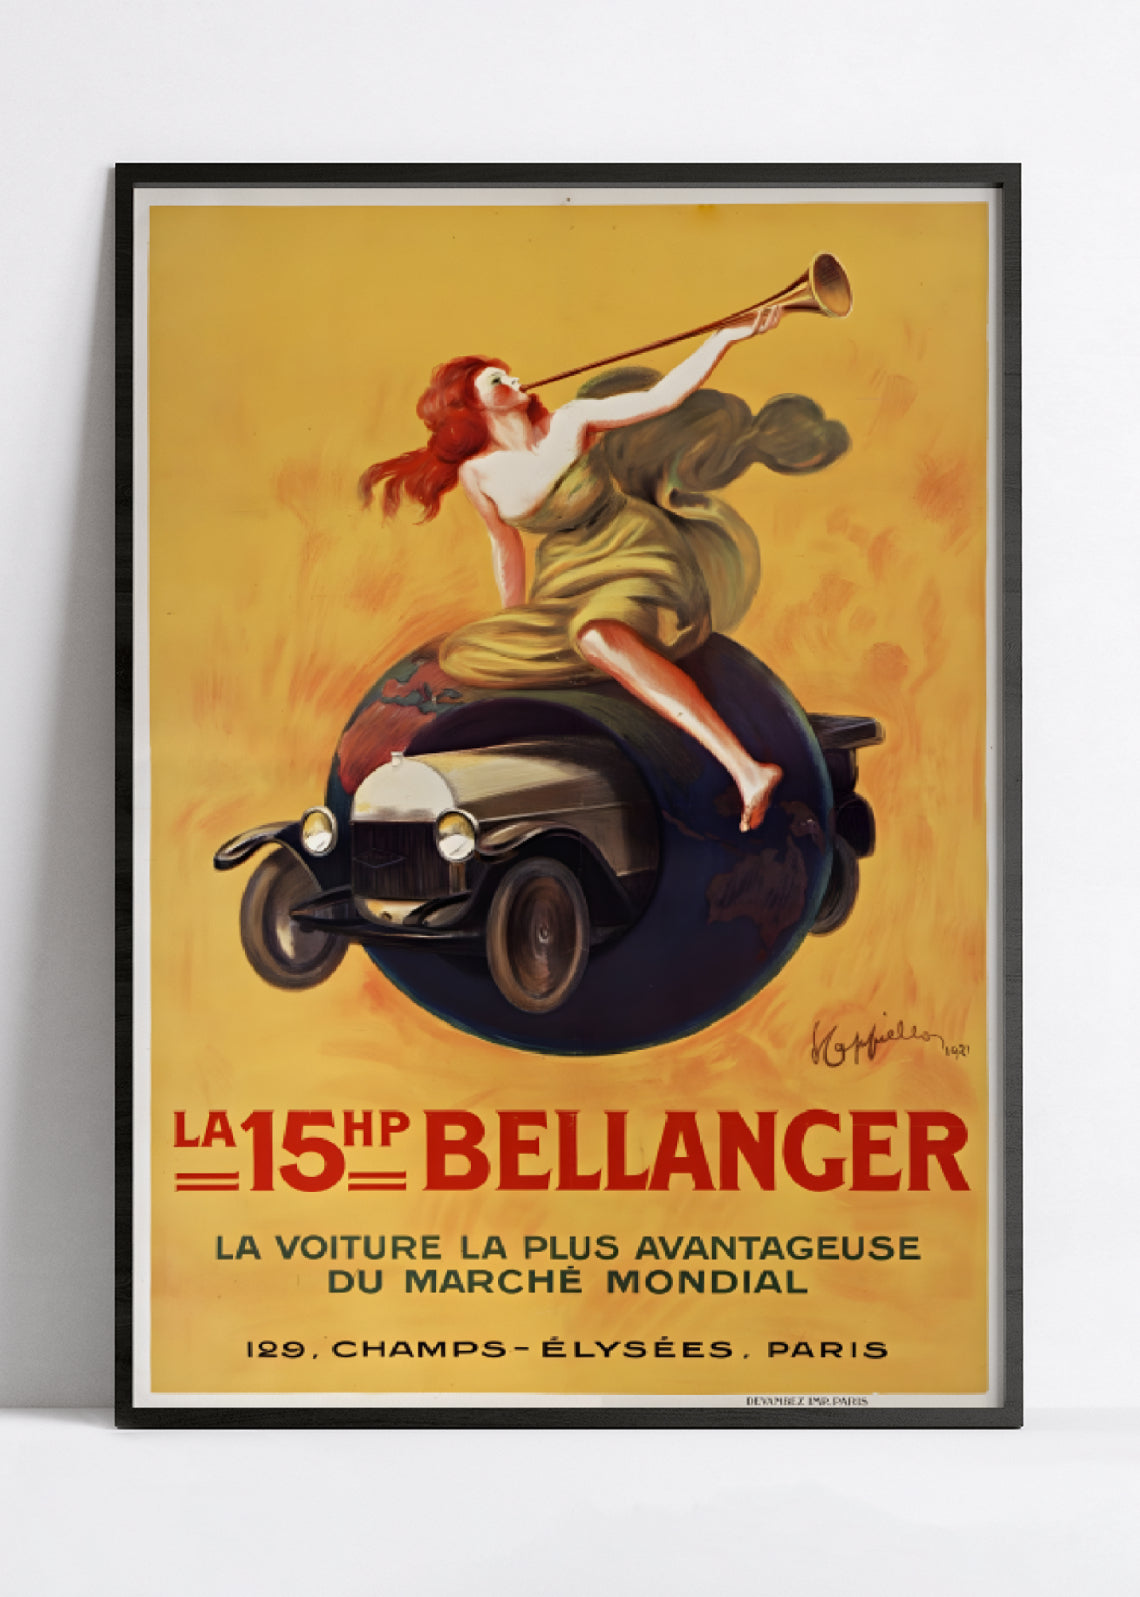 Affiche voiture vintage "15HP Bellanger" - Leonetto Cappiello - Haute Définition - papier mat 230gr/m²